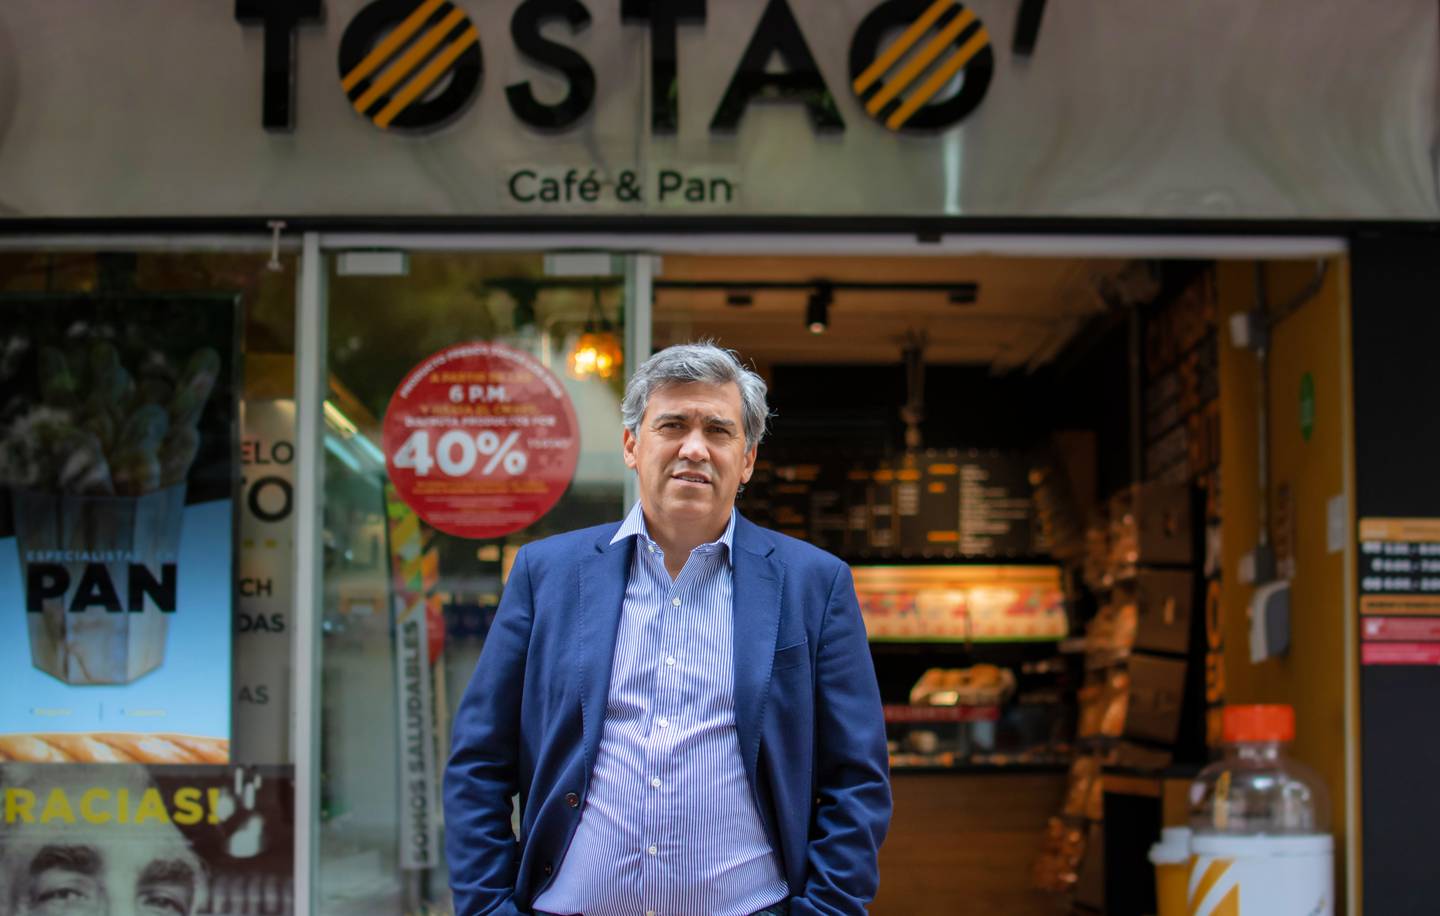 Orientador general de Tostao’ Café & Pan, Helder Jacinto